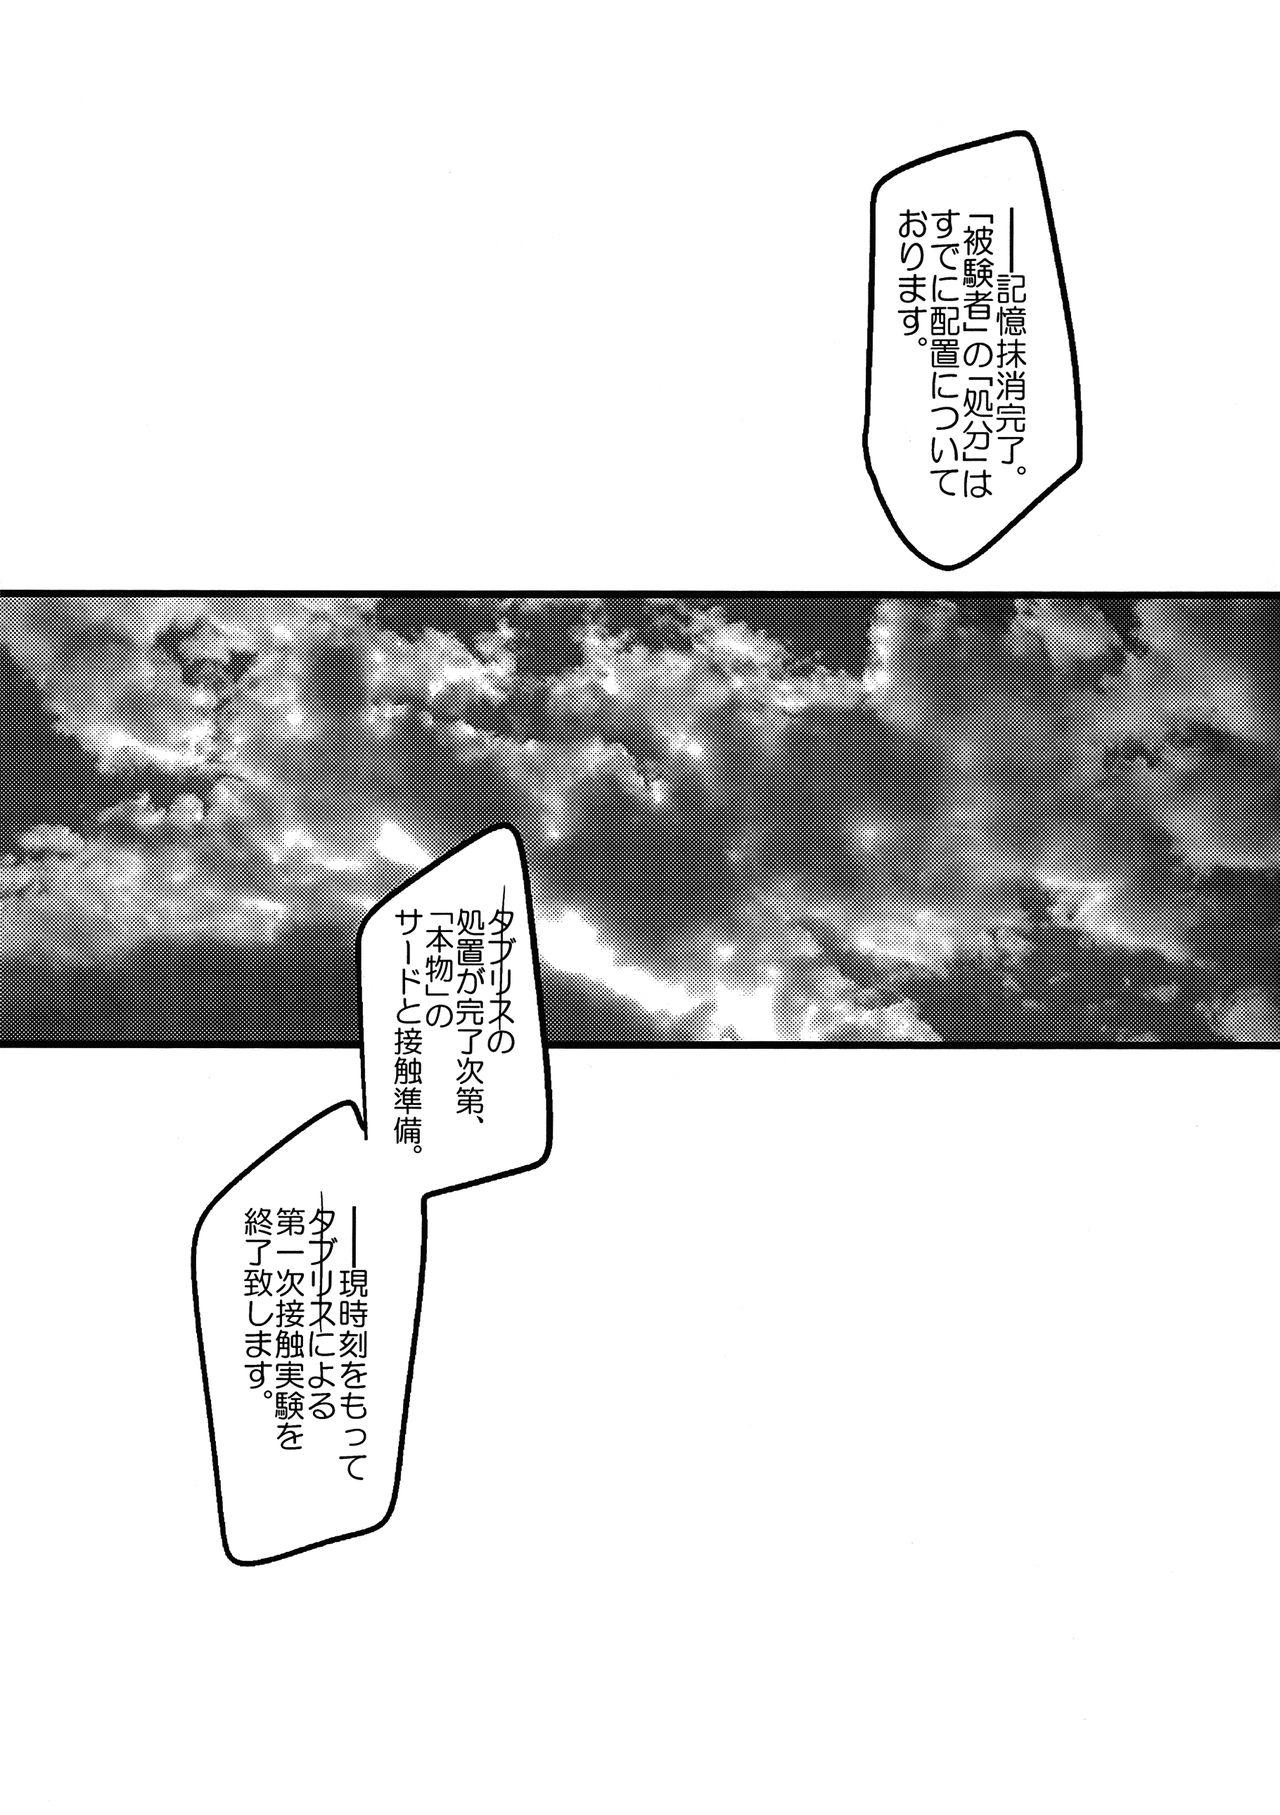 Cam Sex Ore no Koto o Ikari Shinji da to Omoikomu Saimin ni Kakatta Nagisa Kaworu-kun wa Mechamecha Yasashii - Neon genesis evangelion Officesex - Page 11